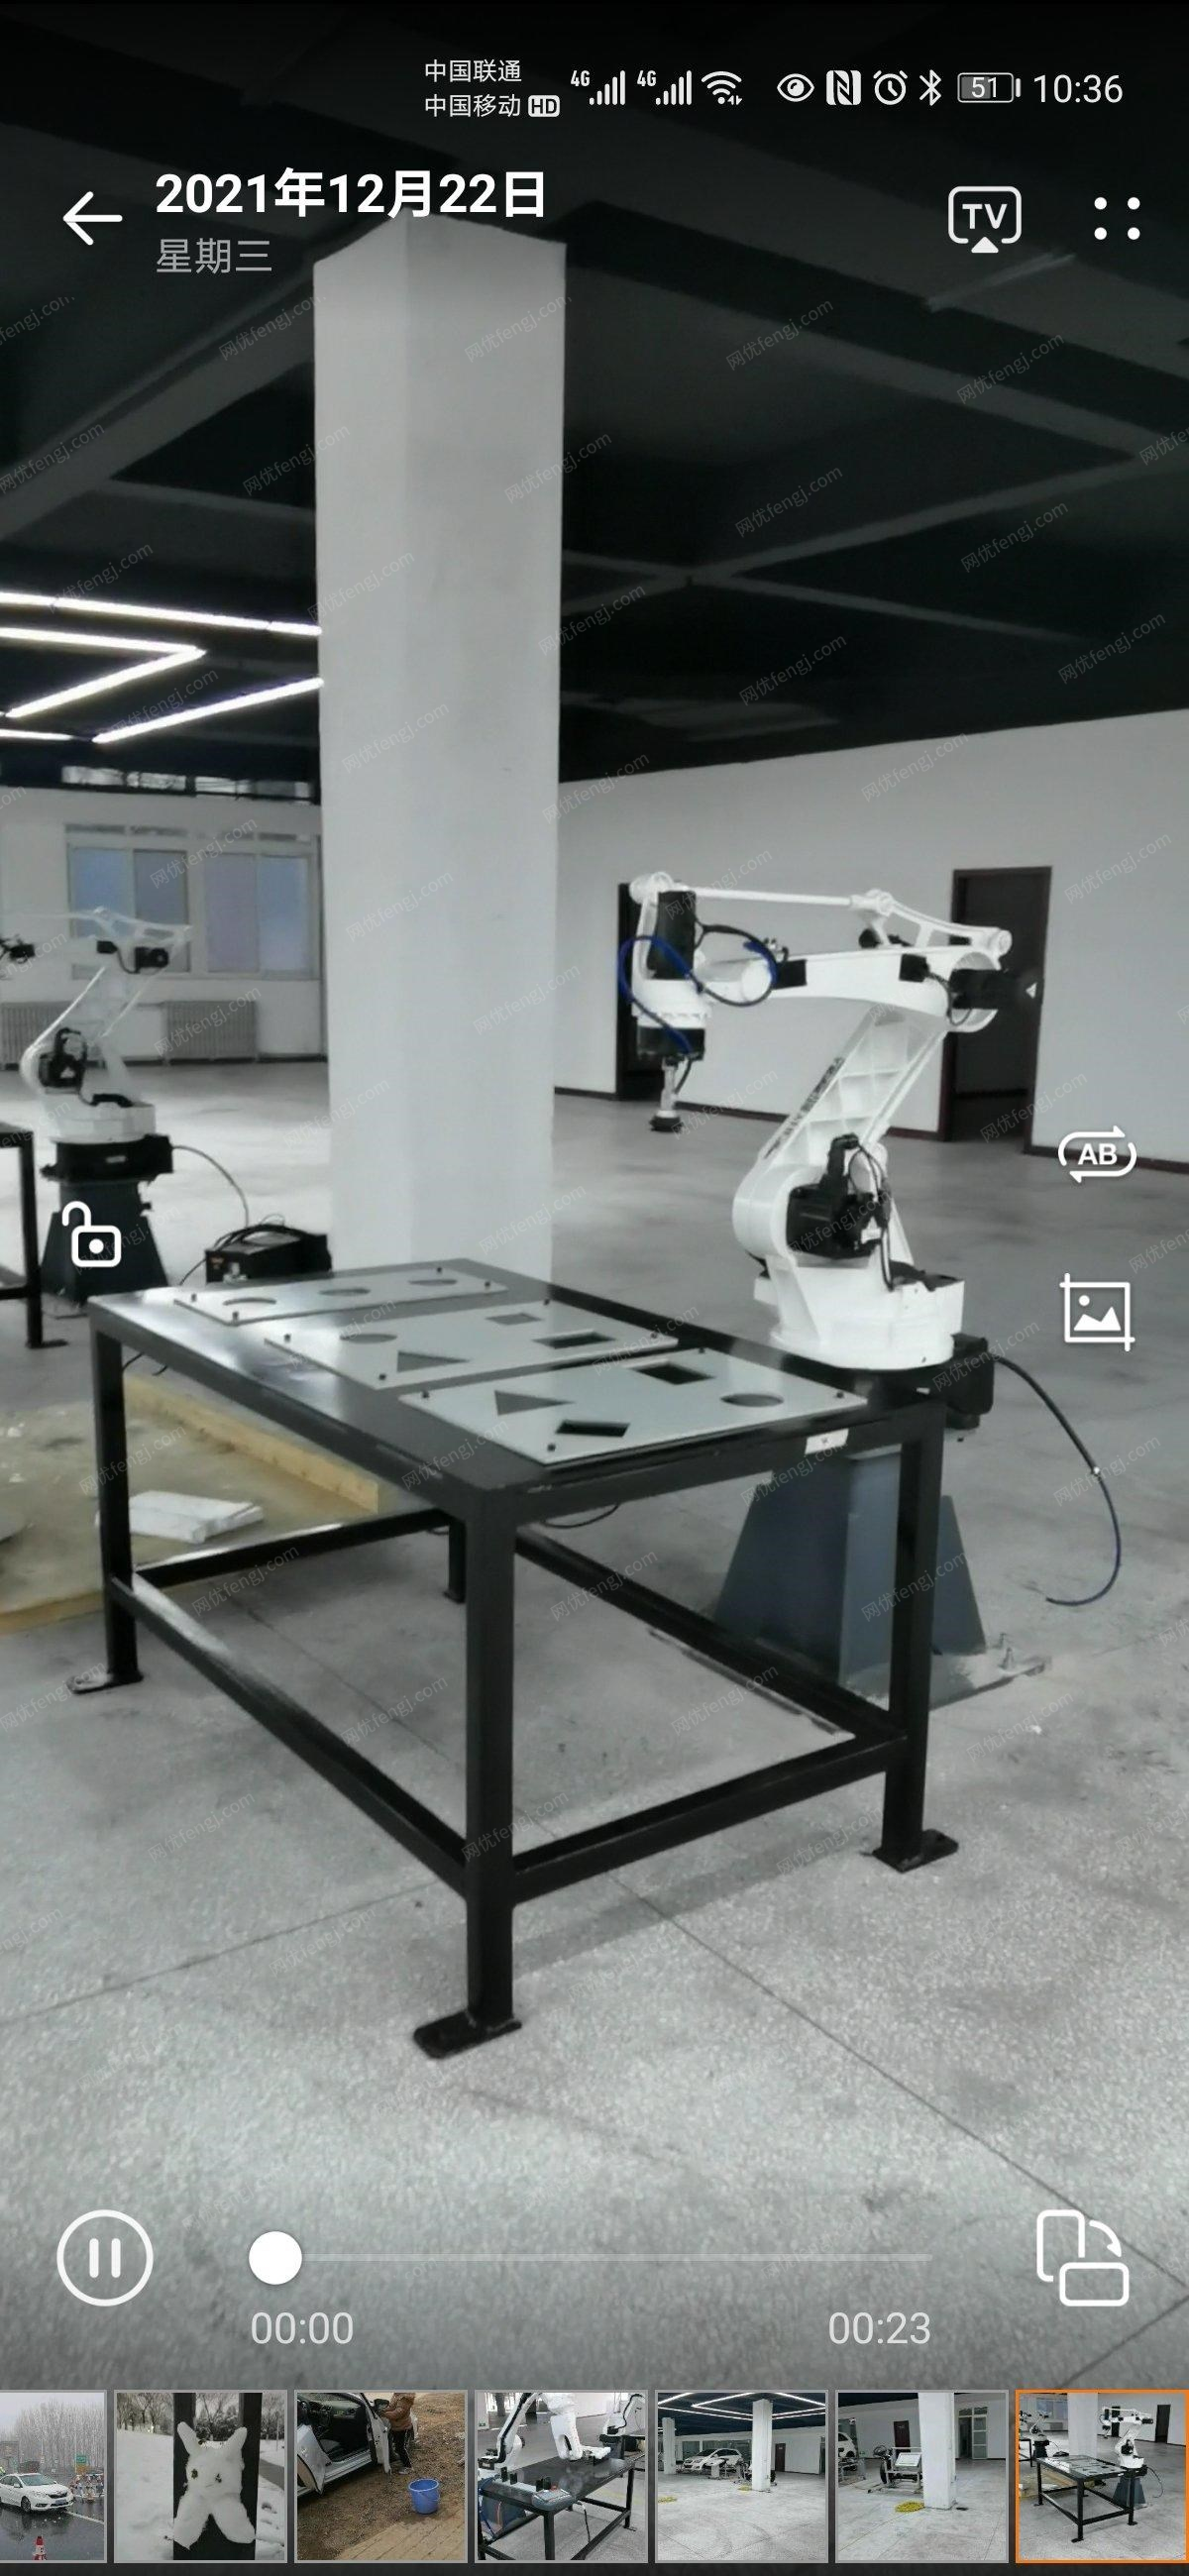 河南郑州出售全新工业机器人1台、装配机器人1台、码垛机器人1台、搬运机器人1台 